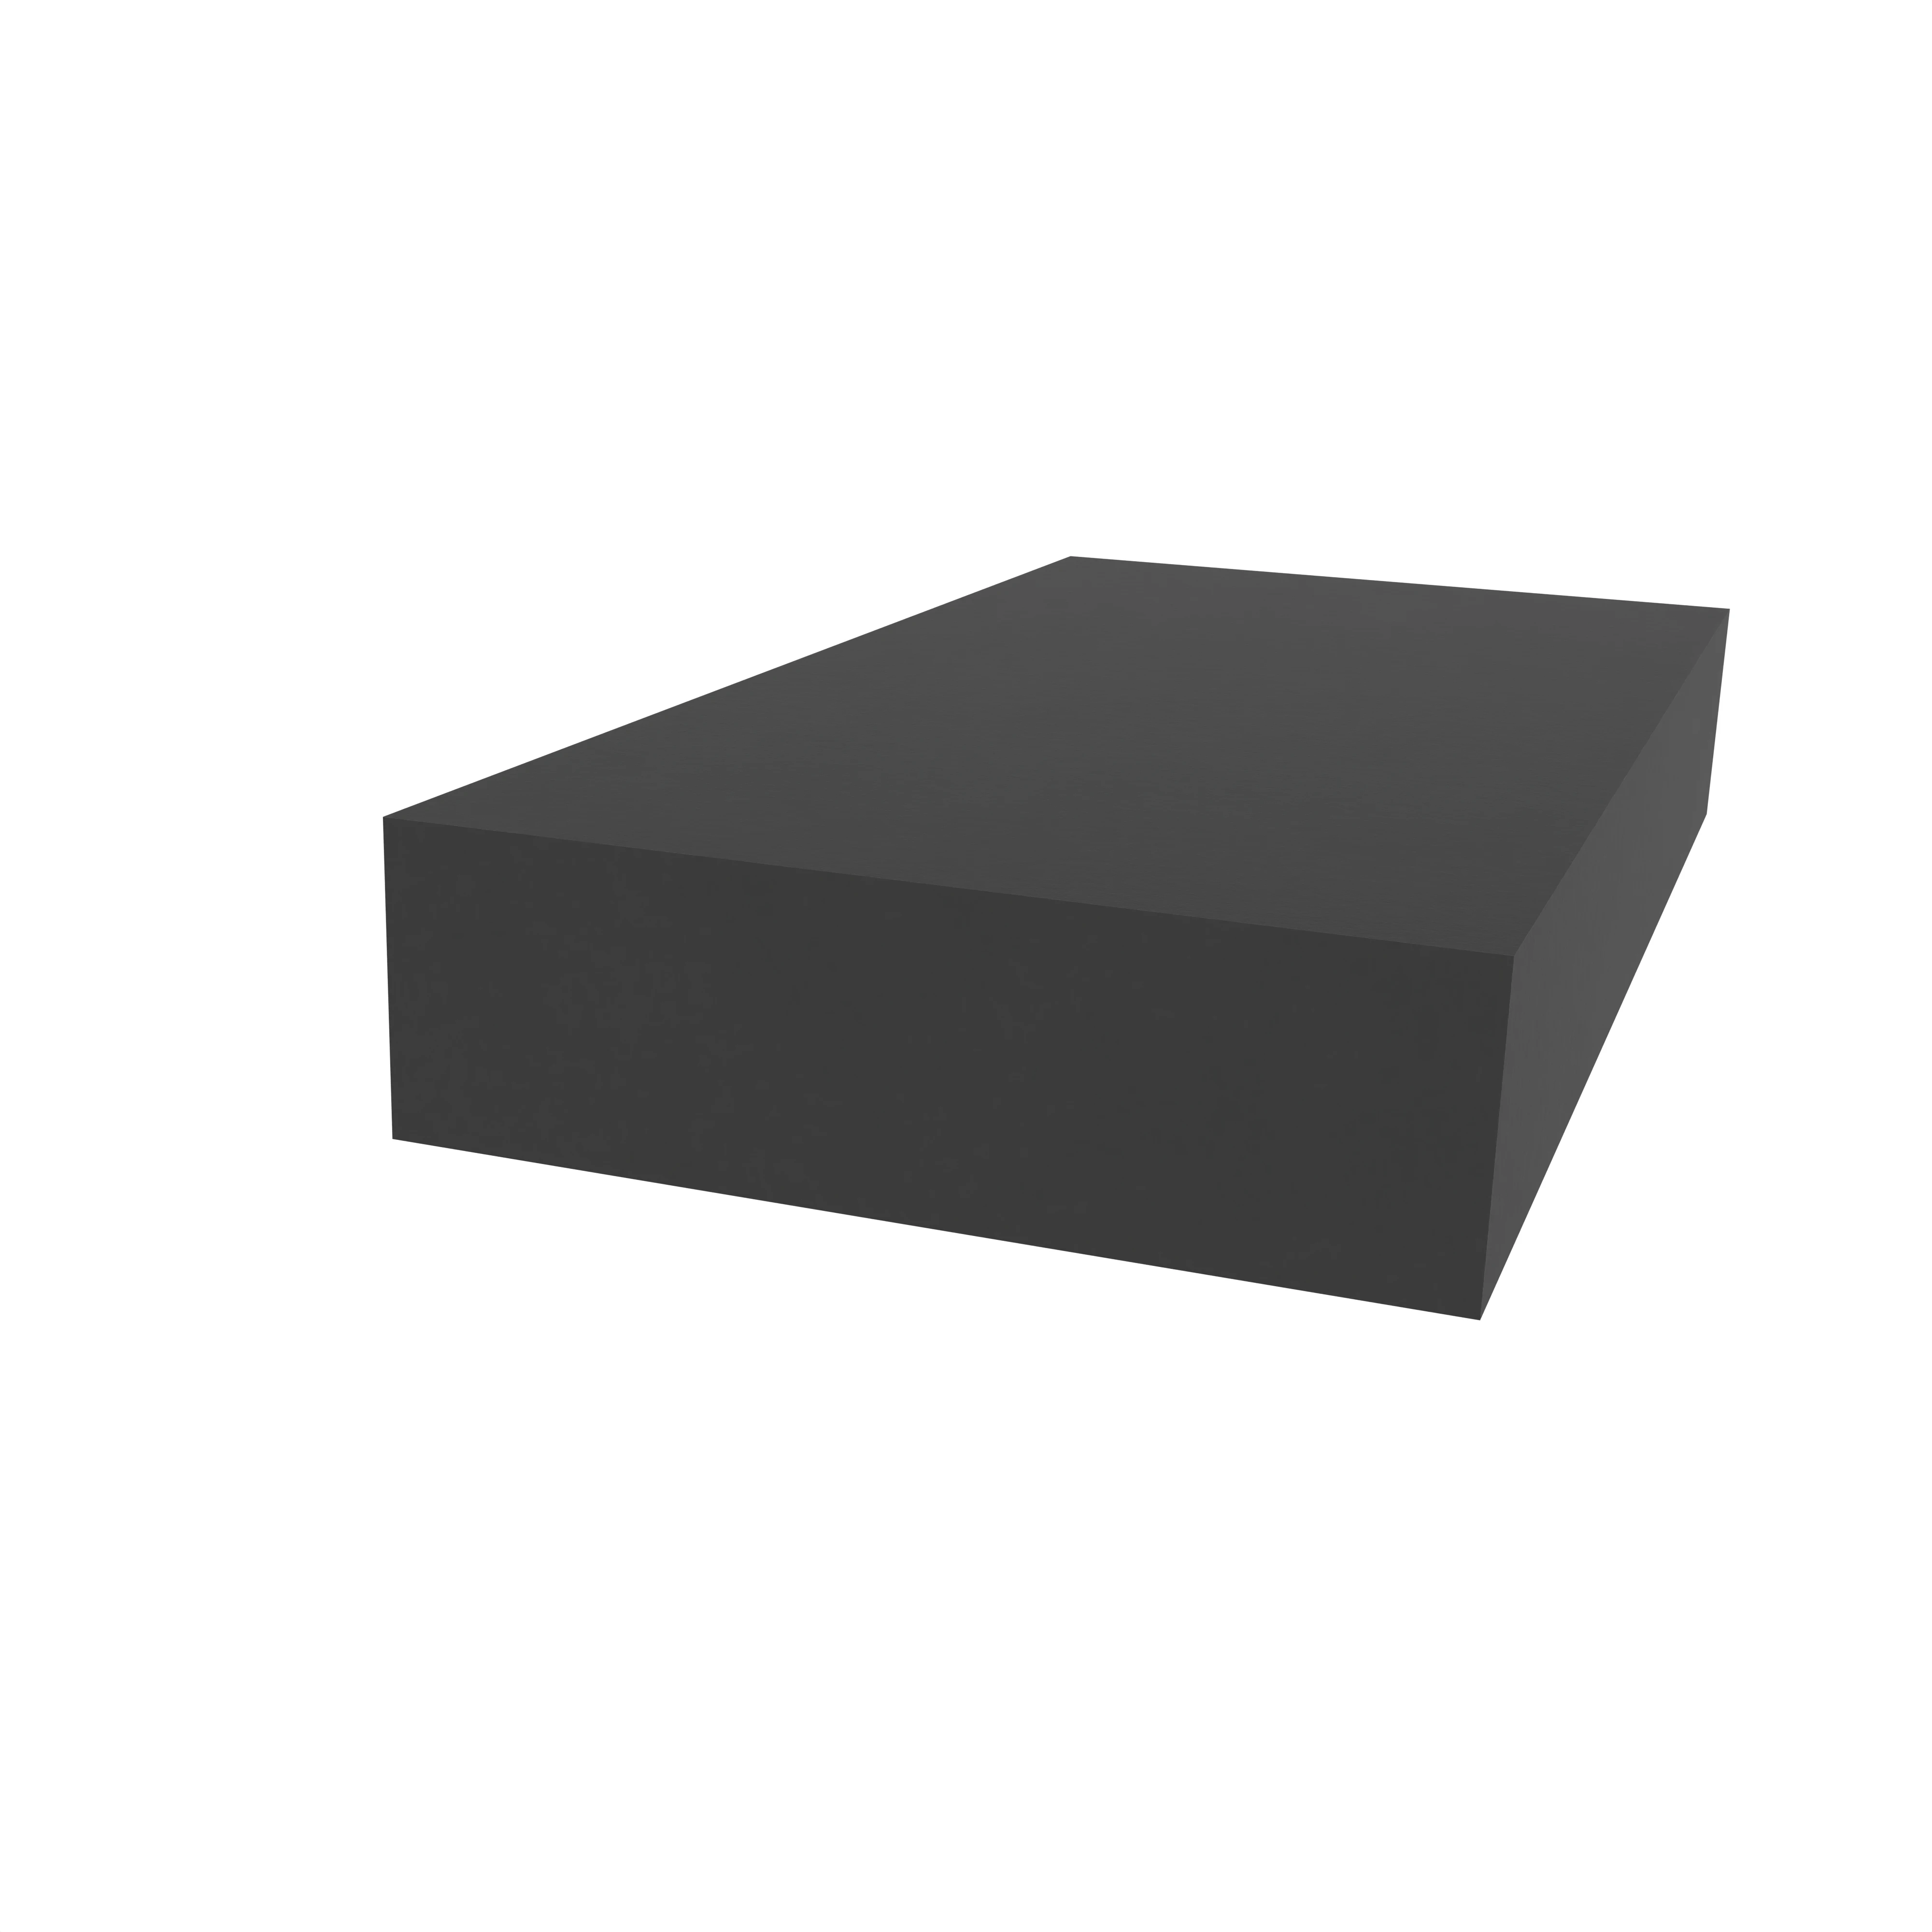 Moosgummidichtung vierkant | 20 mm Breite | Farbe: schwarz